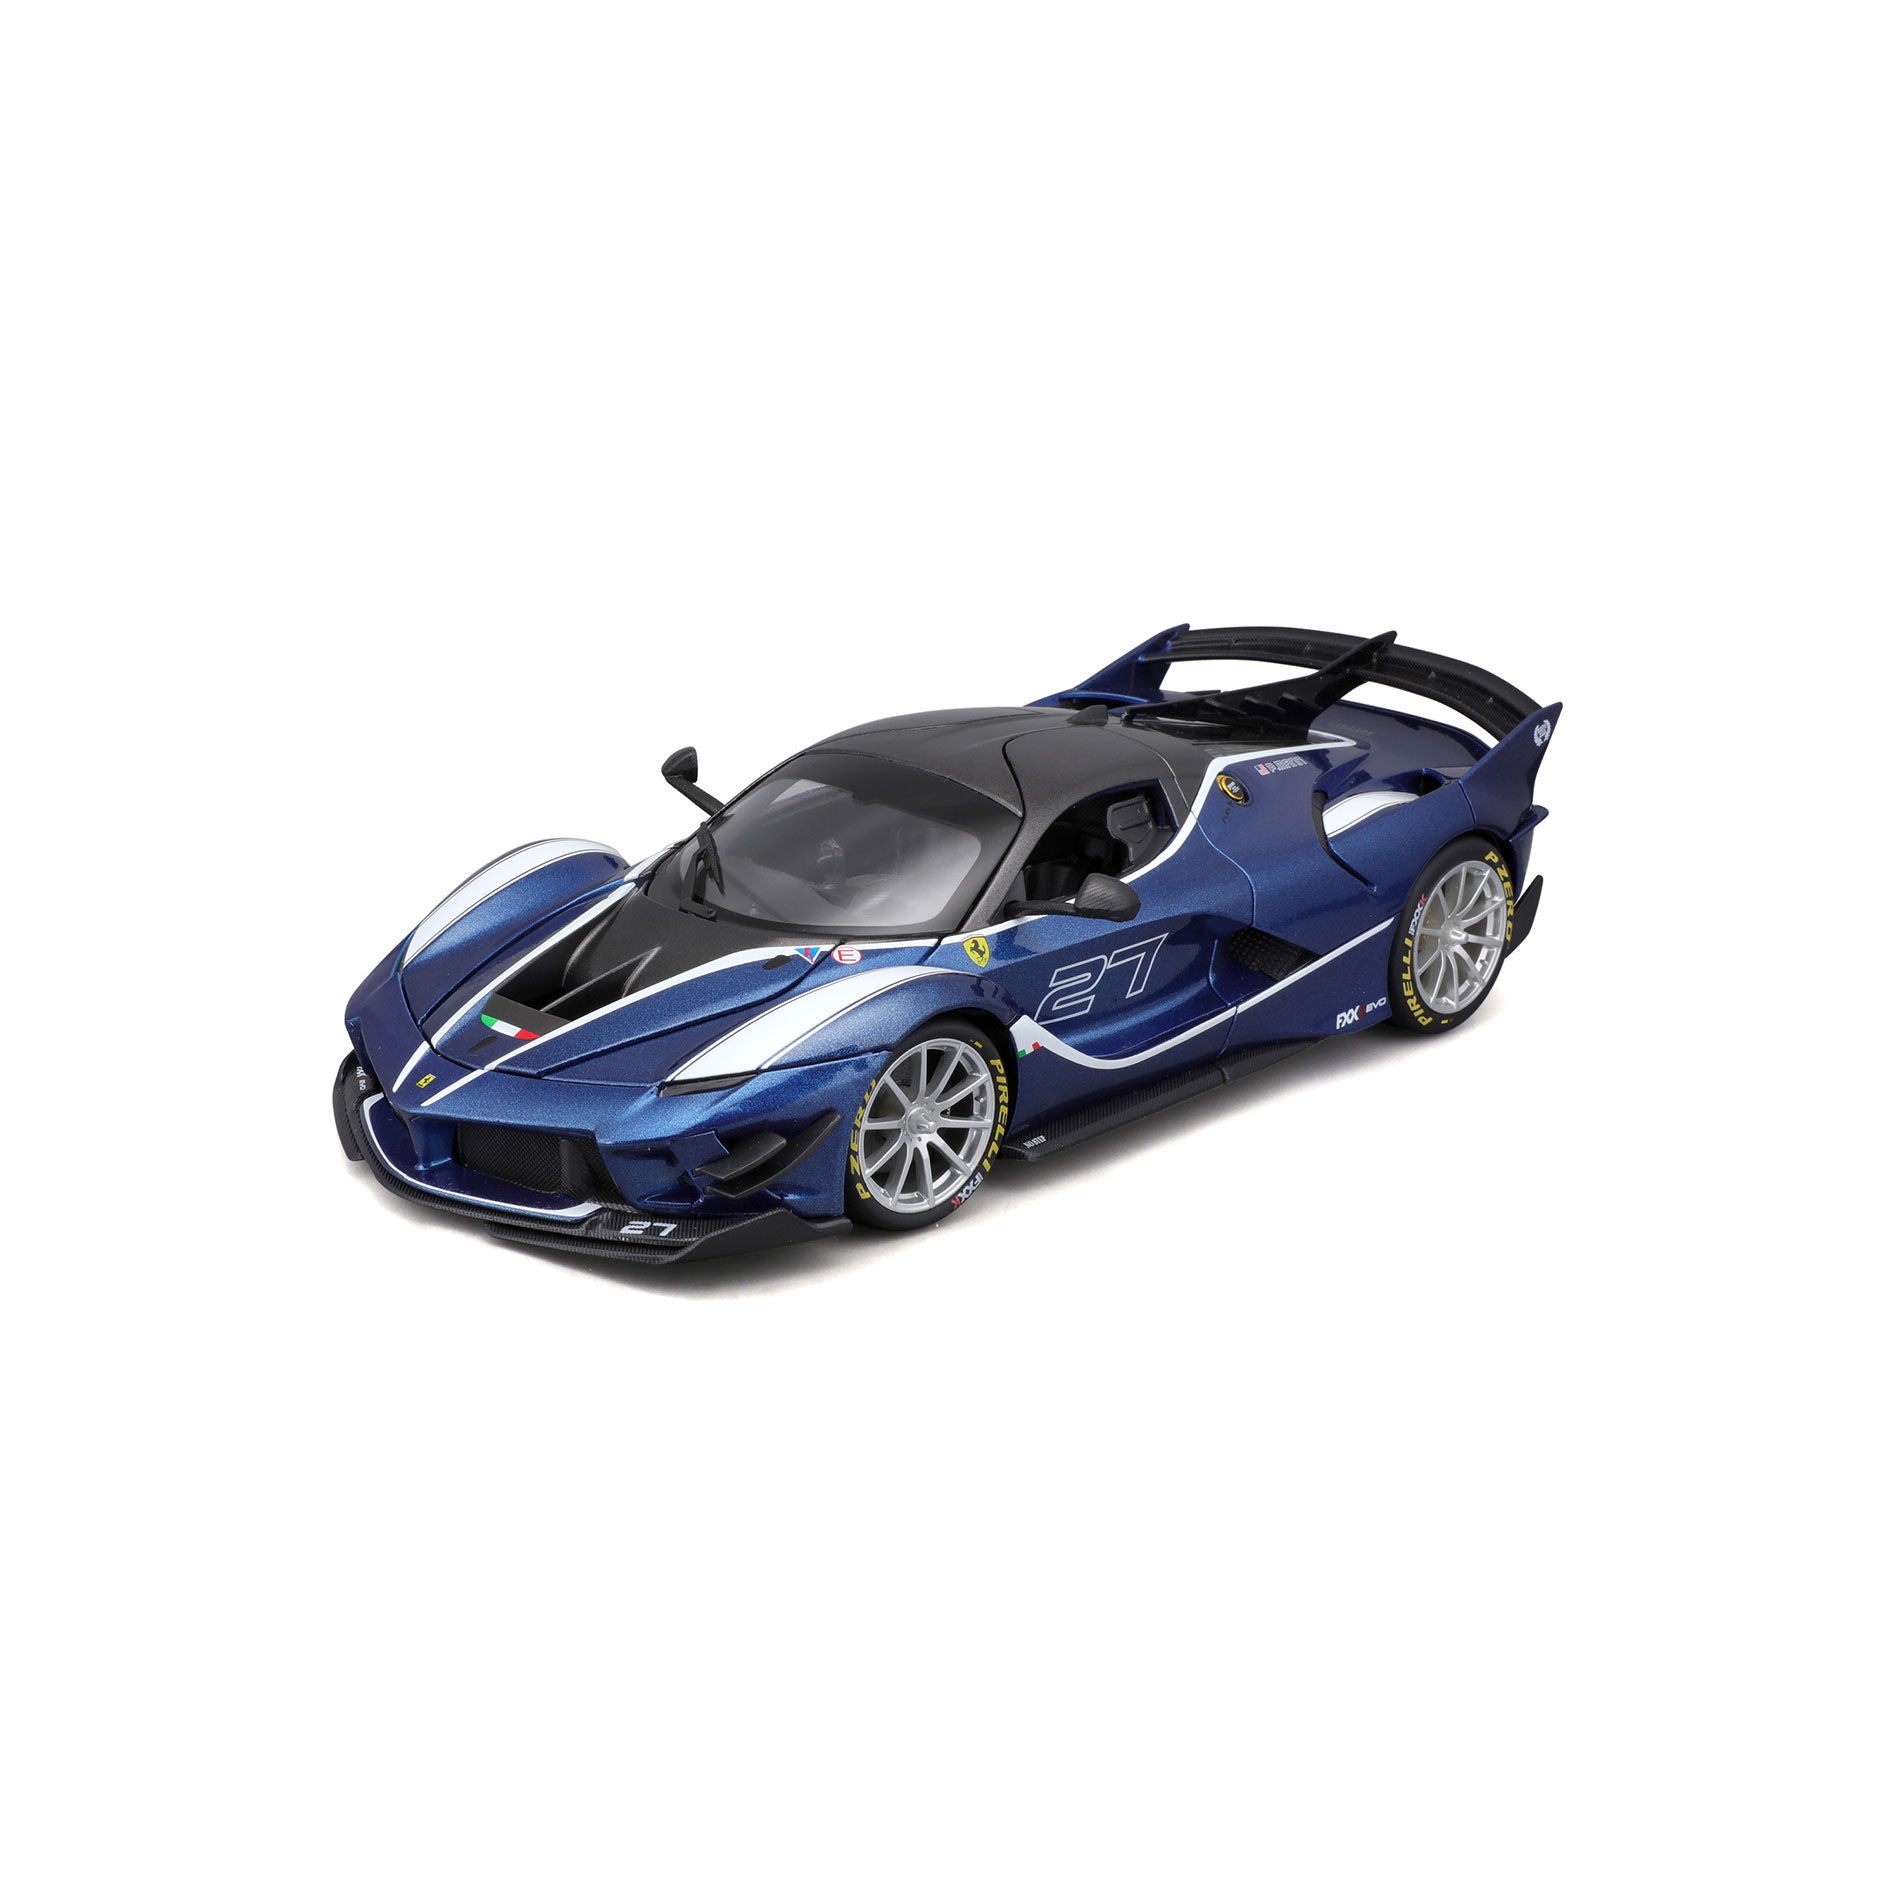 18-16012 - 1:18 - Bburago Ferrari R&P FXX K EVO - #27 Blu